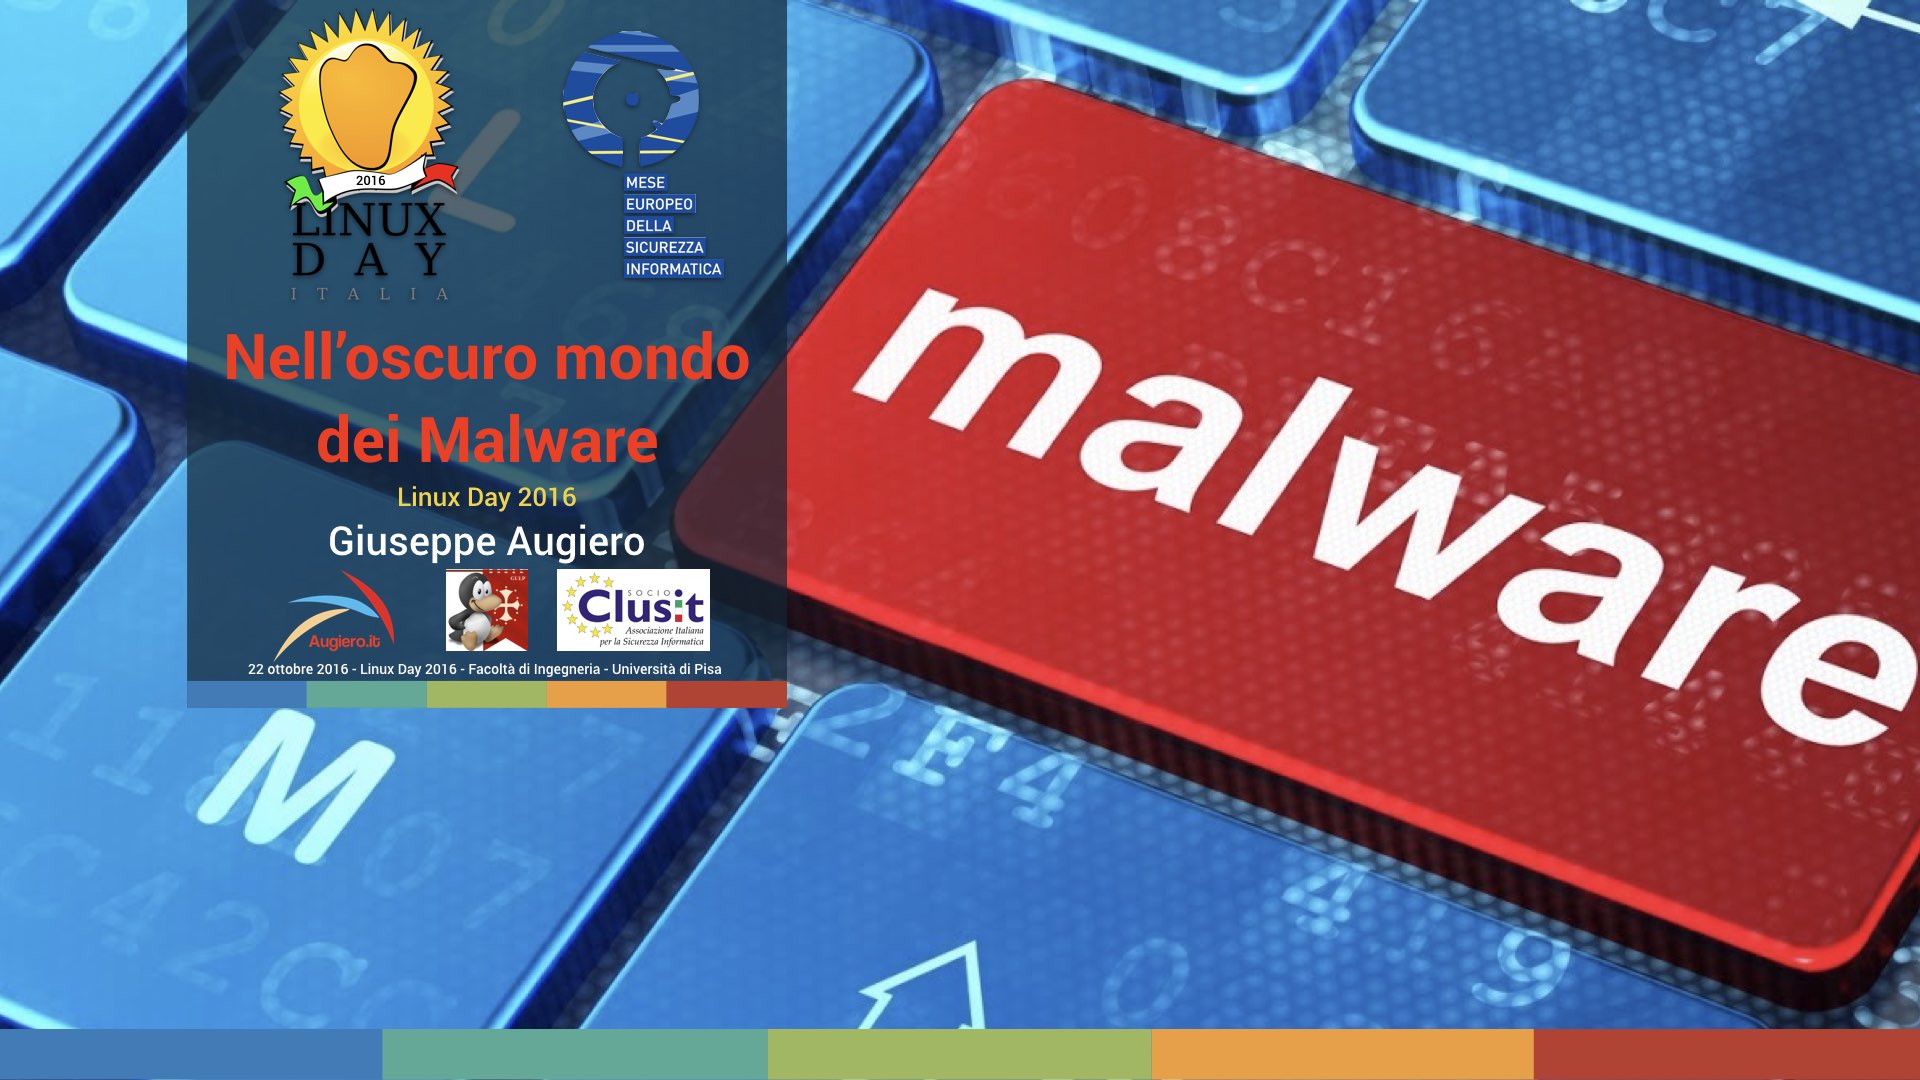 Slide: “Nell’oscuro mondo dei malware”